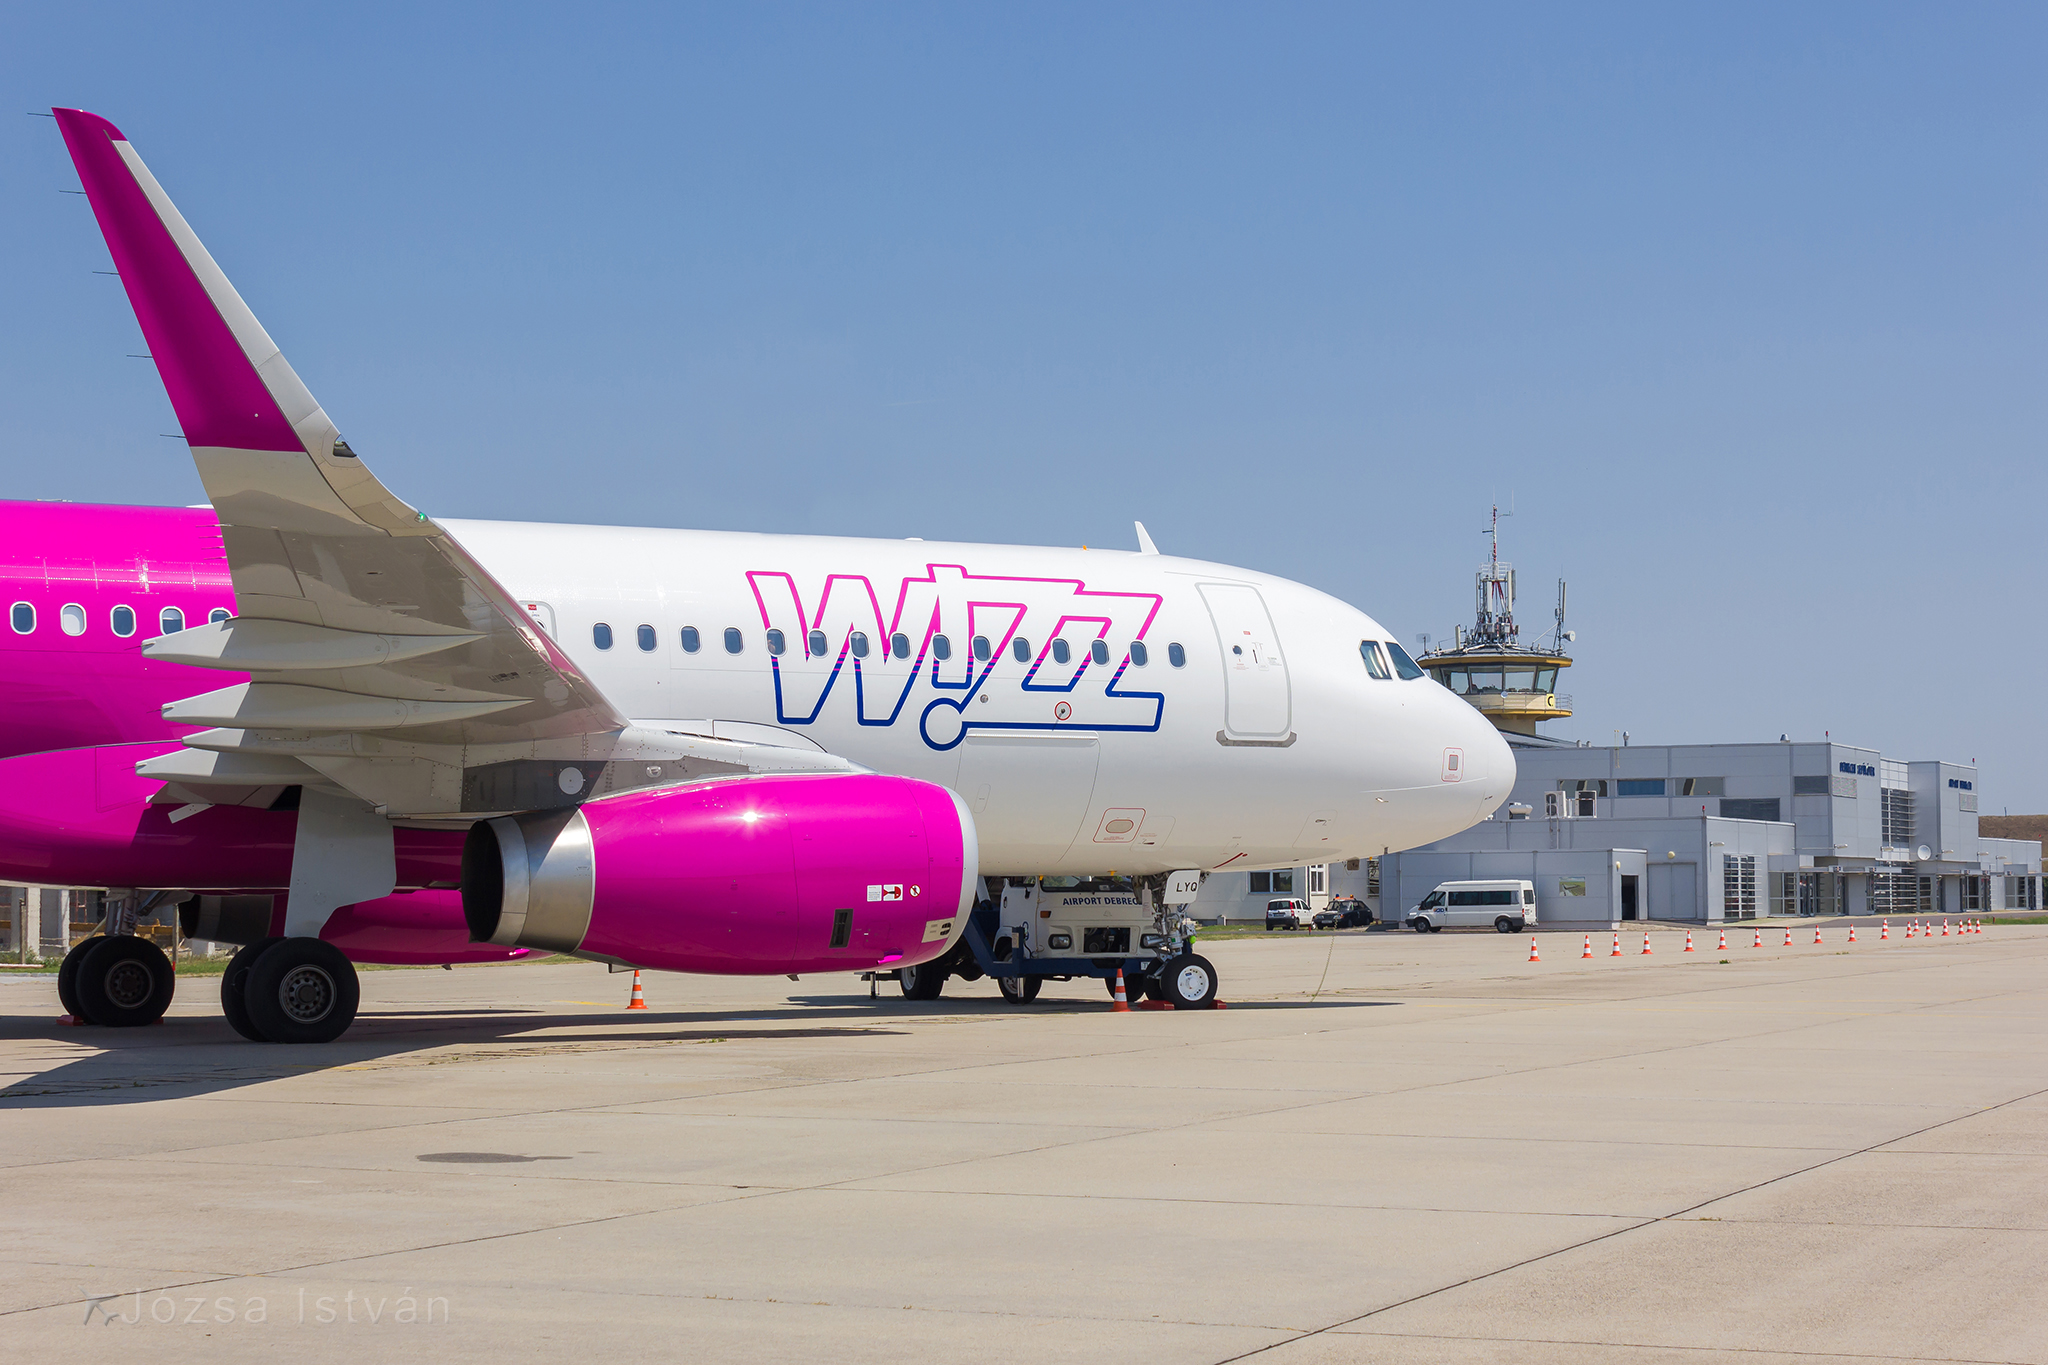 Automatikus utasfelvételt vezet be a Wizz Air - mutatjuk hogyan működik